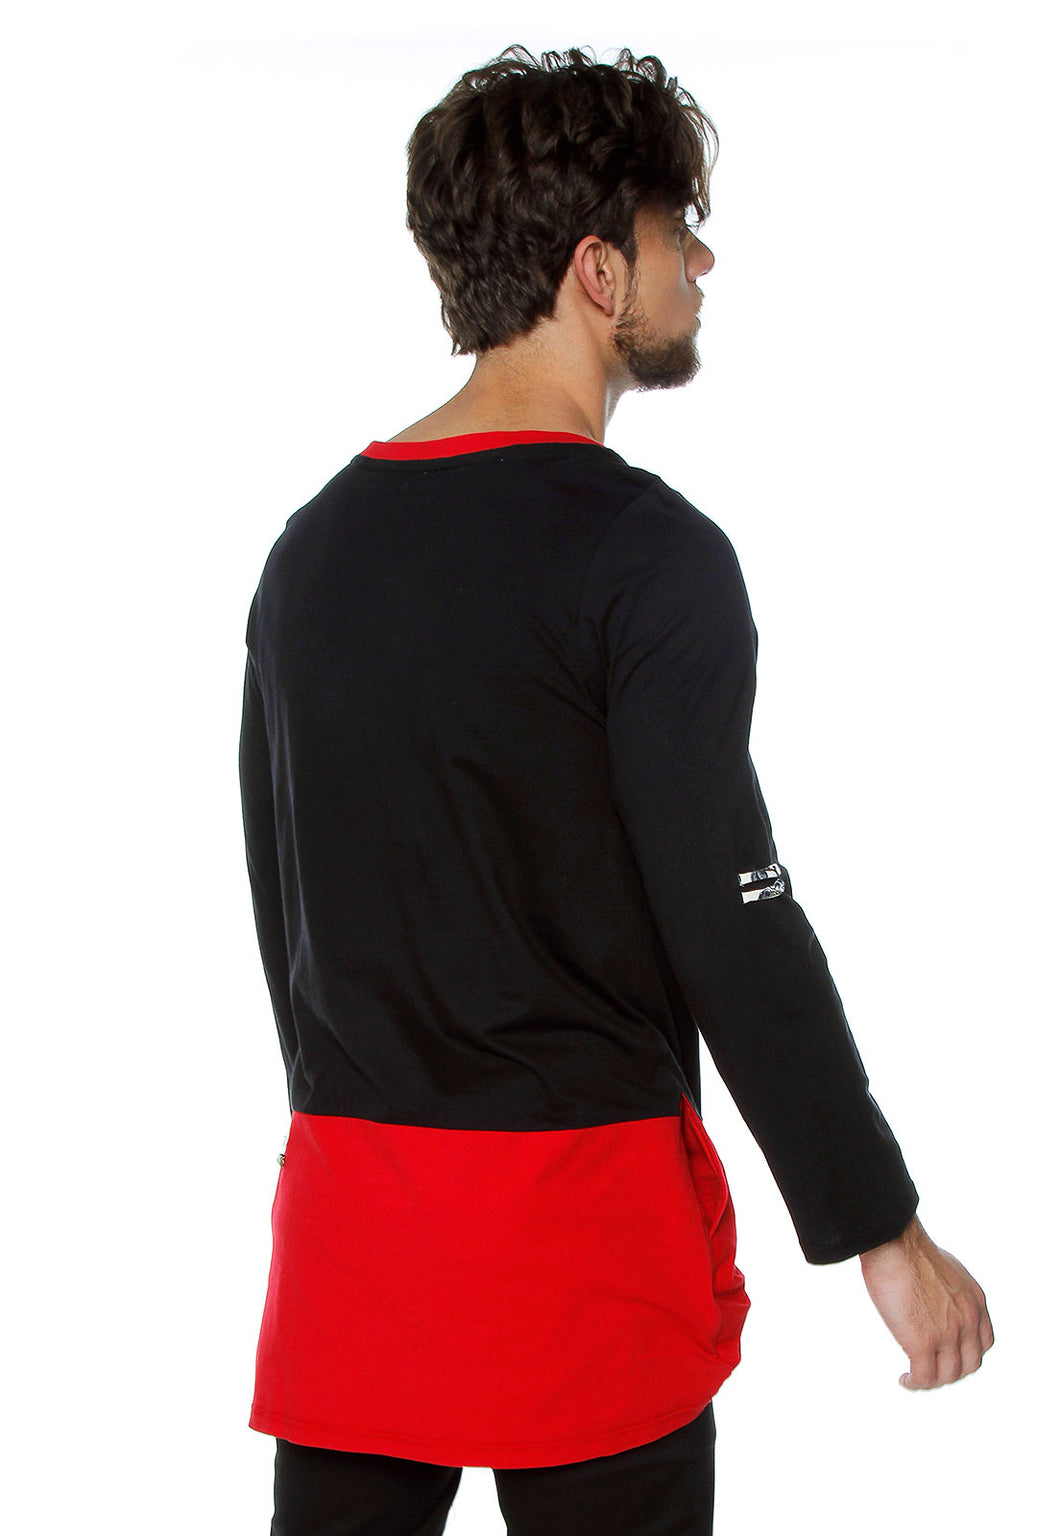 Camisa - Buzo liviano sin género en negro y rojo,  hecho en Colombia! 